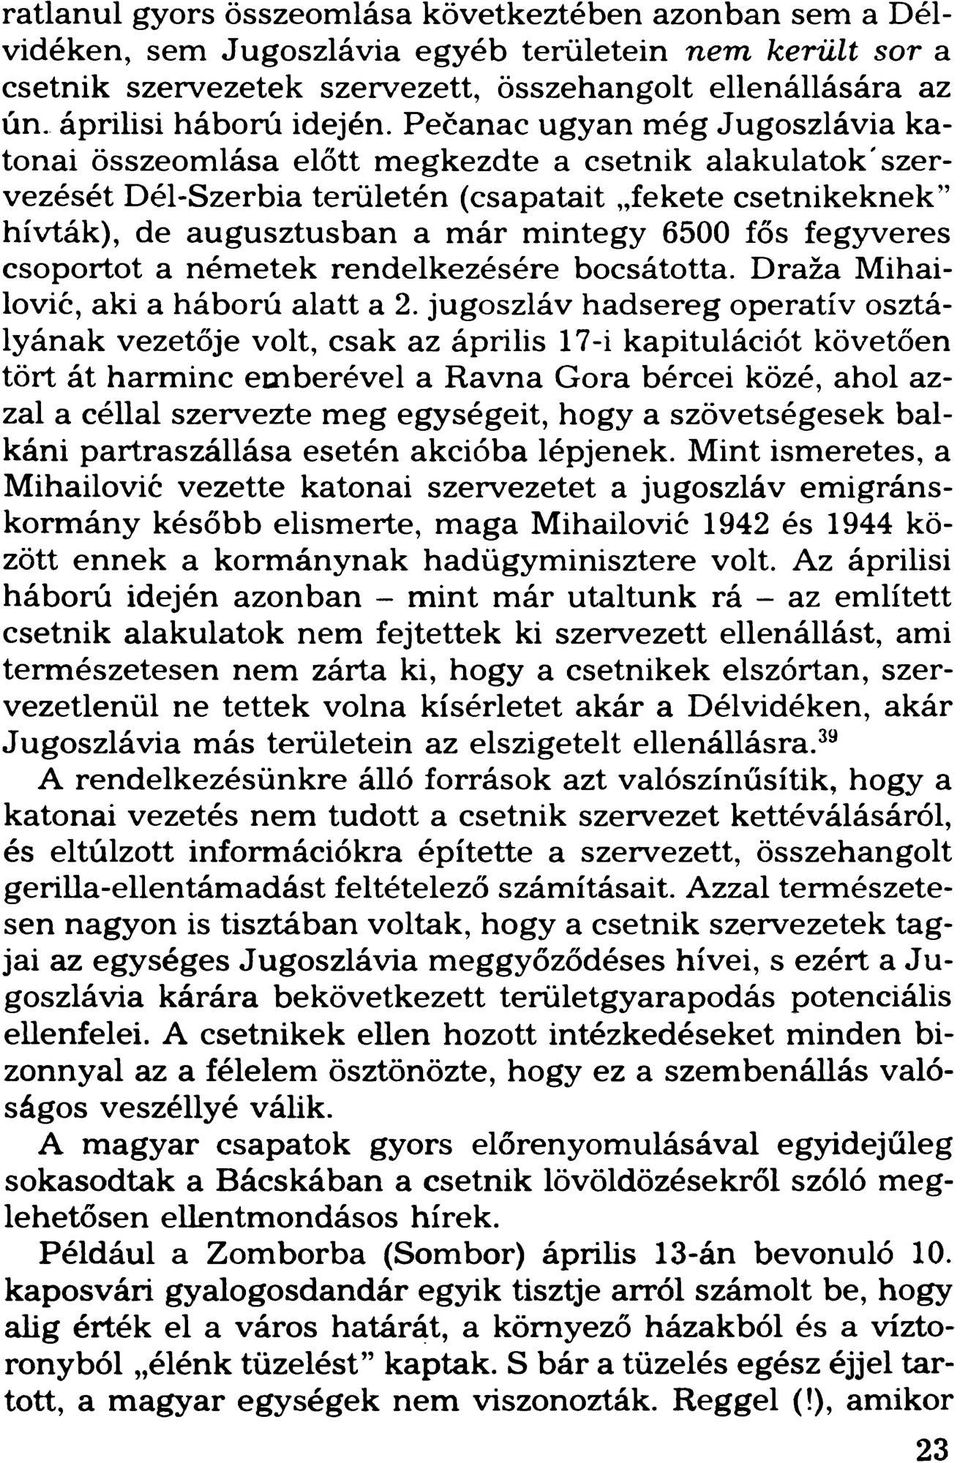 Pečanac ugyan még Jugoszlávia katonai összeomlása előtt megkezdte a csetnik alakulatok'szervezését Dél-Szerbia területén (csapatait fekete csetnikeknek hívták), de augusztusban a már mintegy 6500 fős